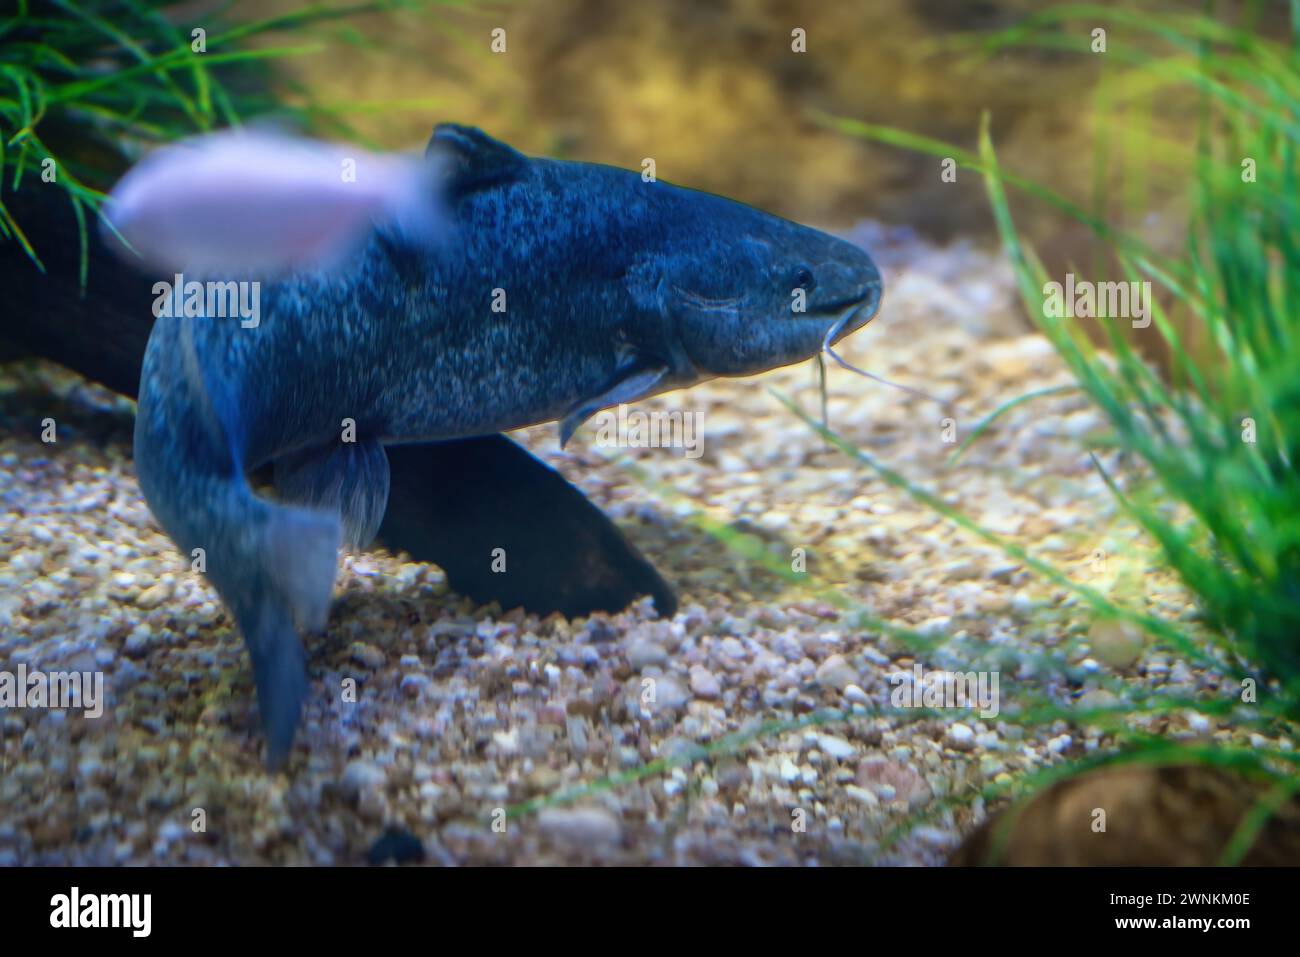 Pesce gatto sudamericano (Rhamdia quelen) - pesce d'acqua dolce Foto Stock